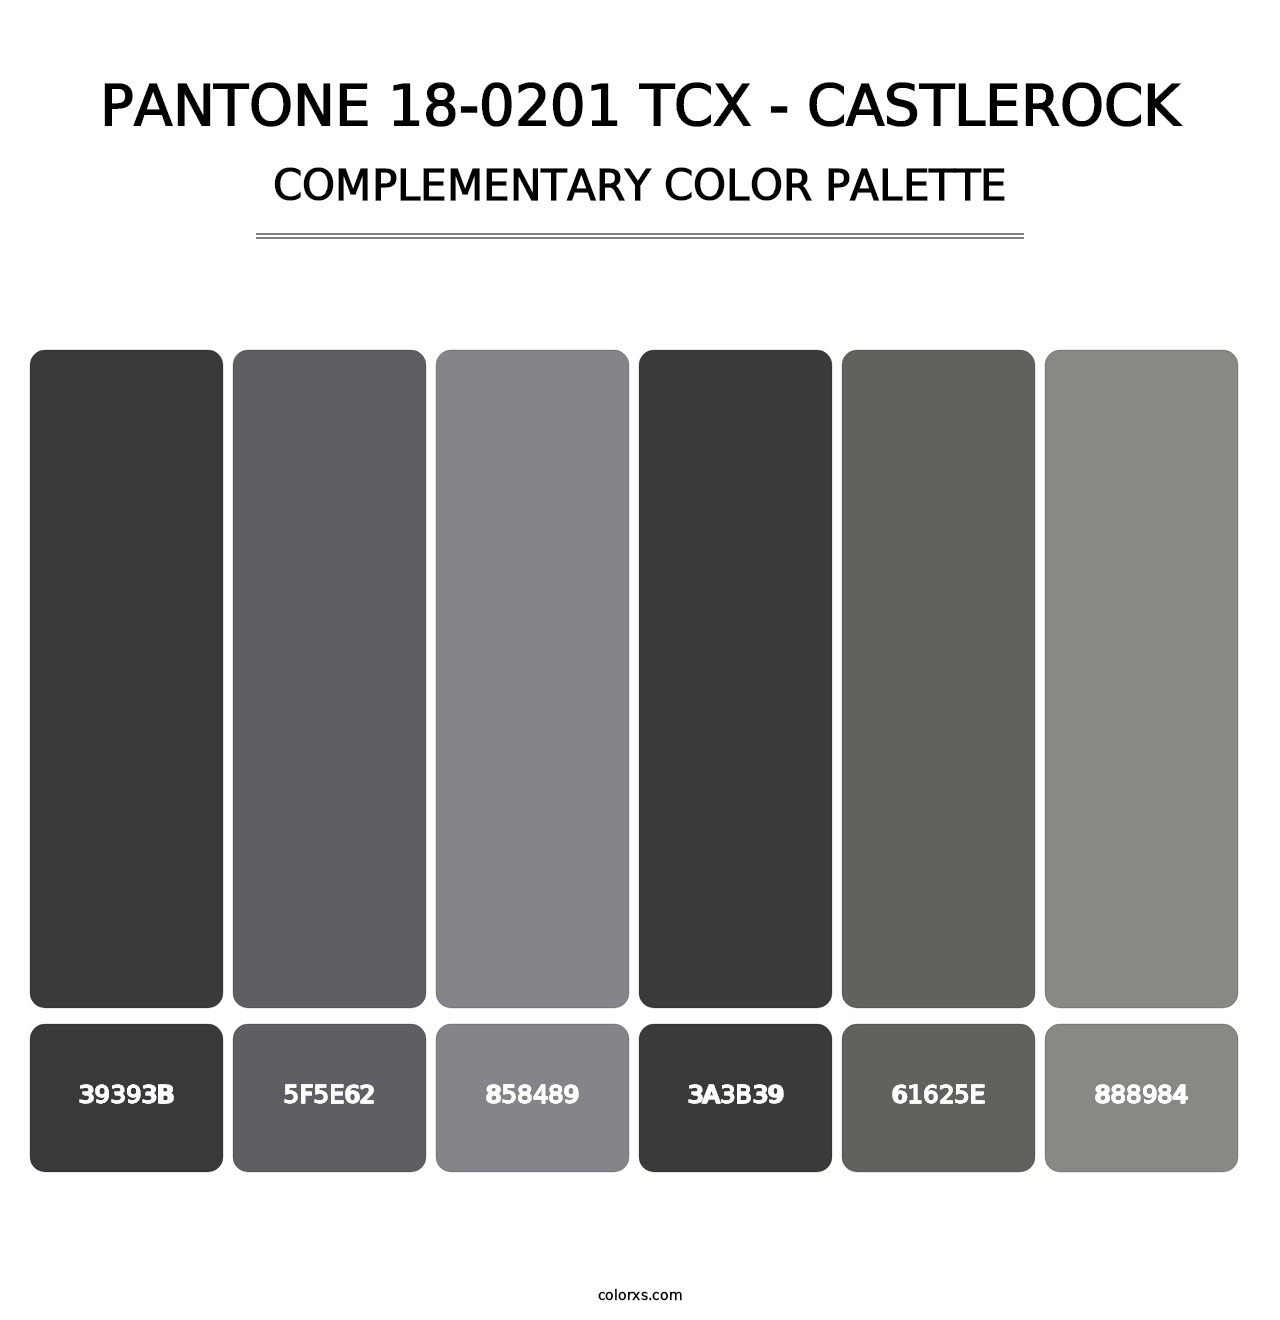 PANTONE 18-0201 TCX - Castlerock - Complementary Color Palette